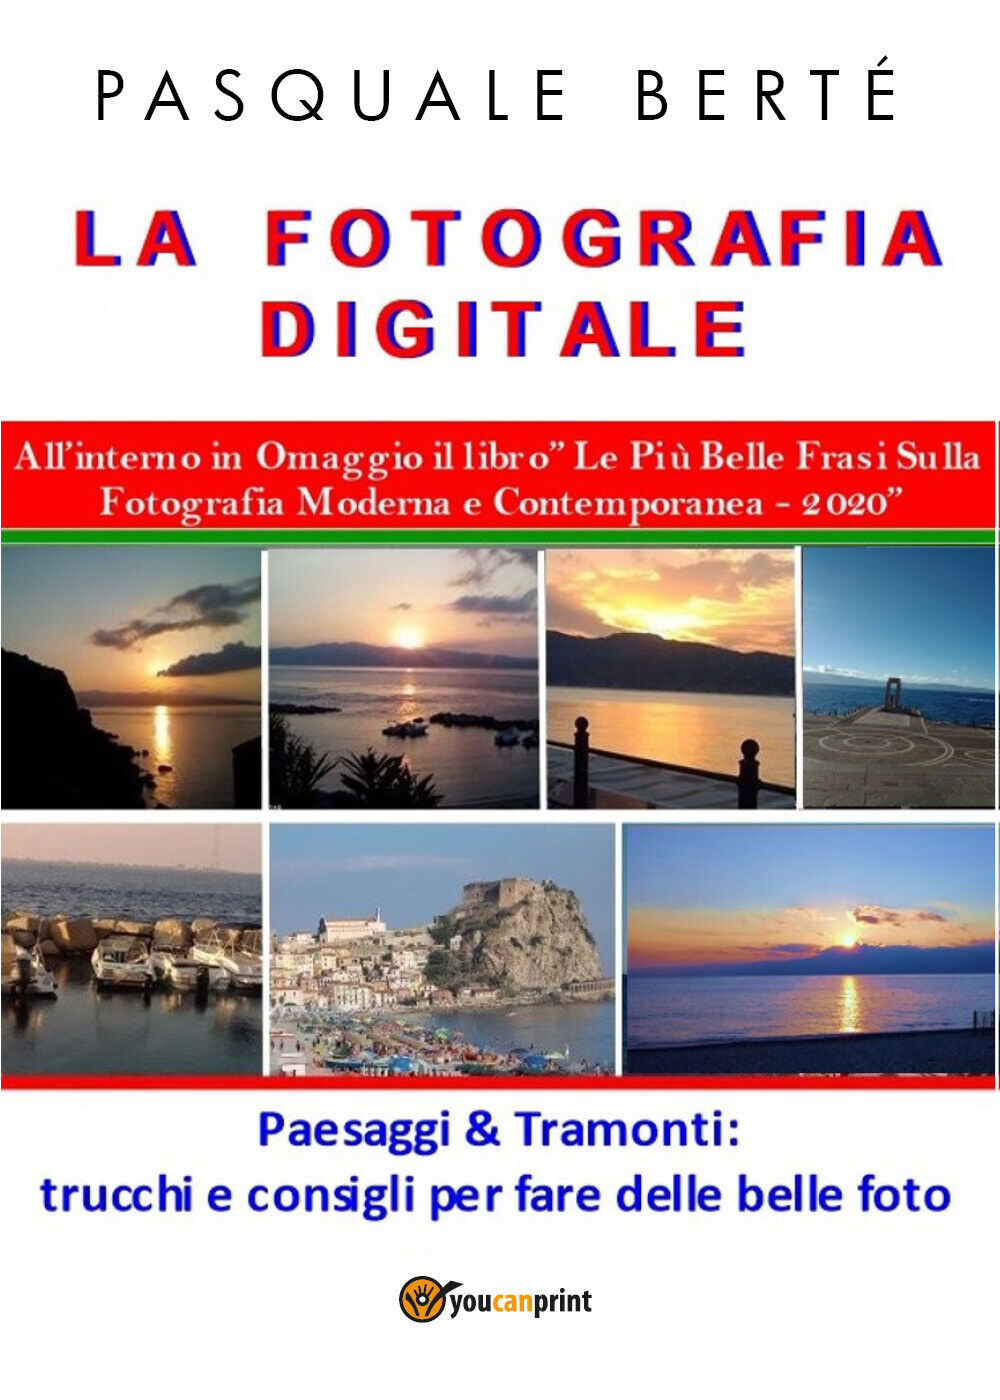 La Fotografia Digitale: Paesaggi e Tramonti - 2020, Pasquale Bert?,  2020